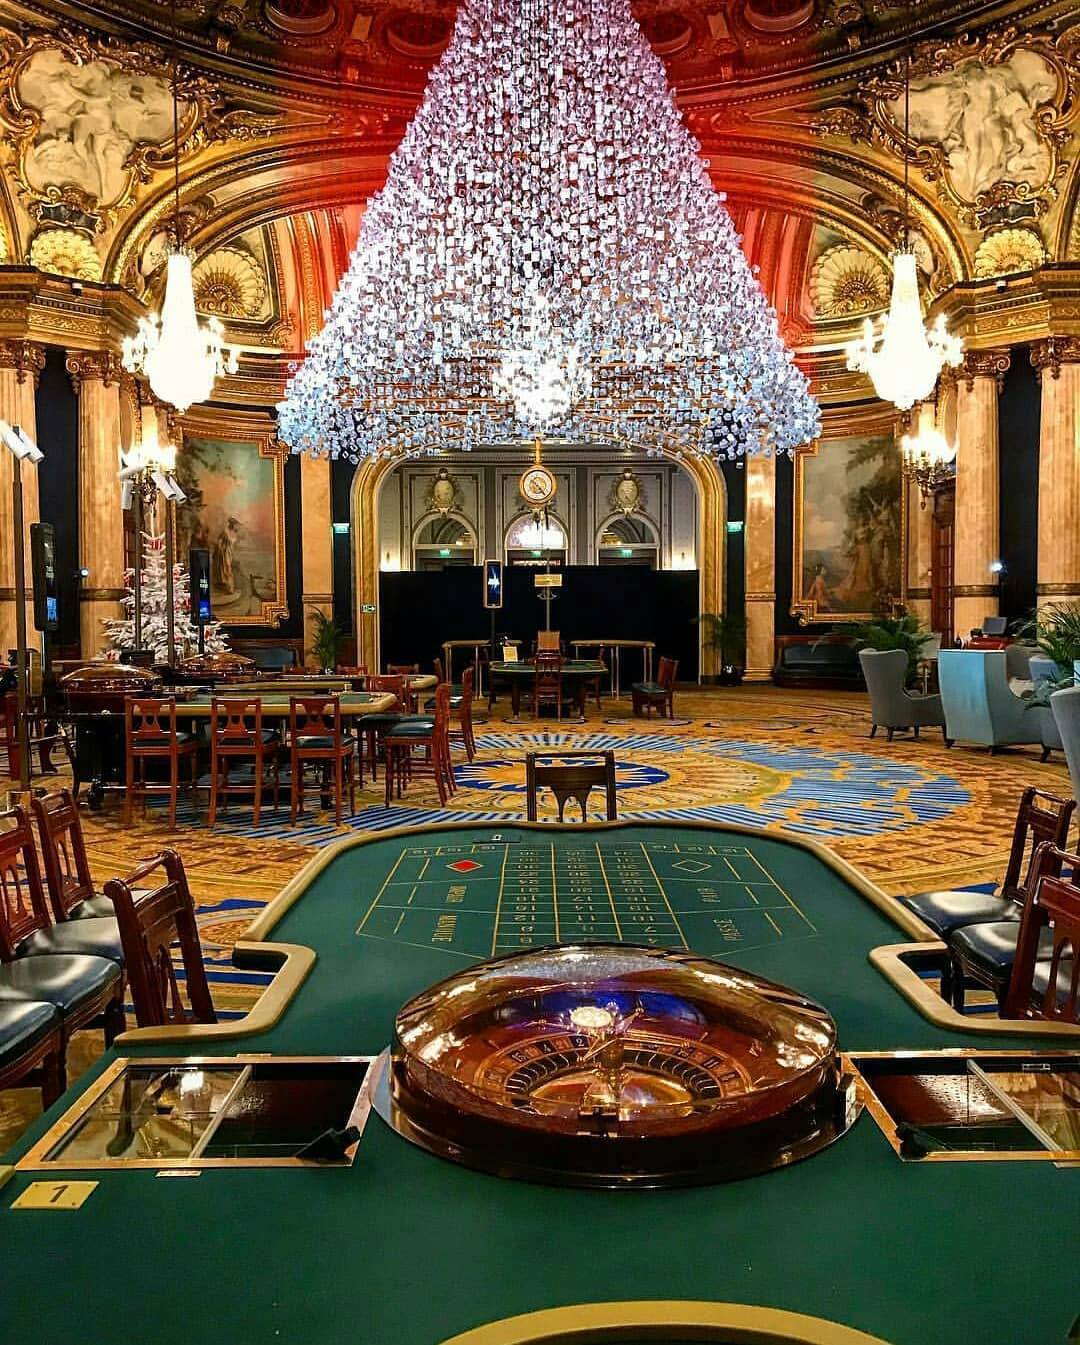 When Was The Monte Carlo Casino Built